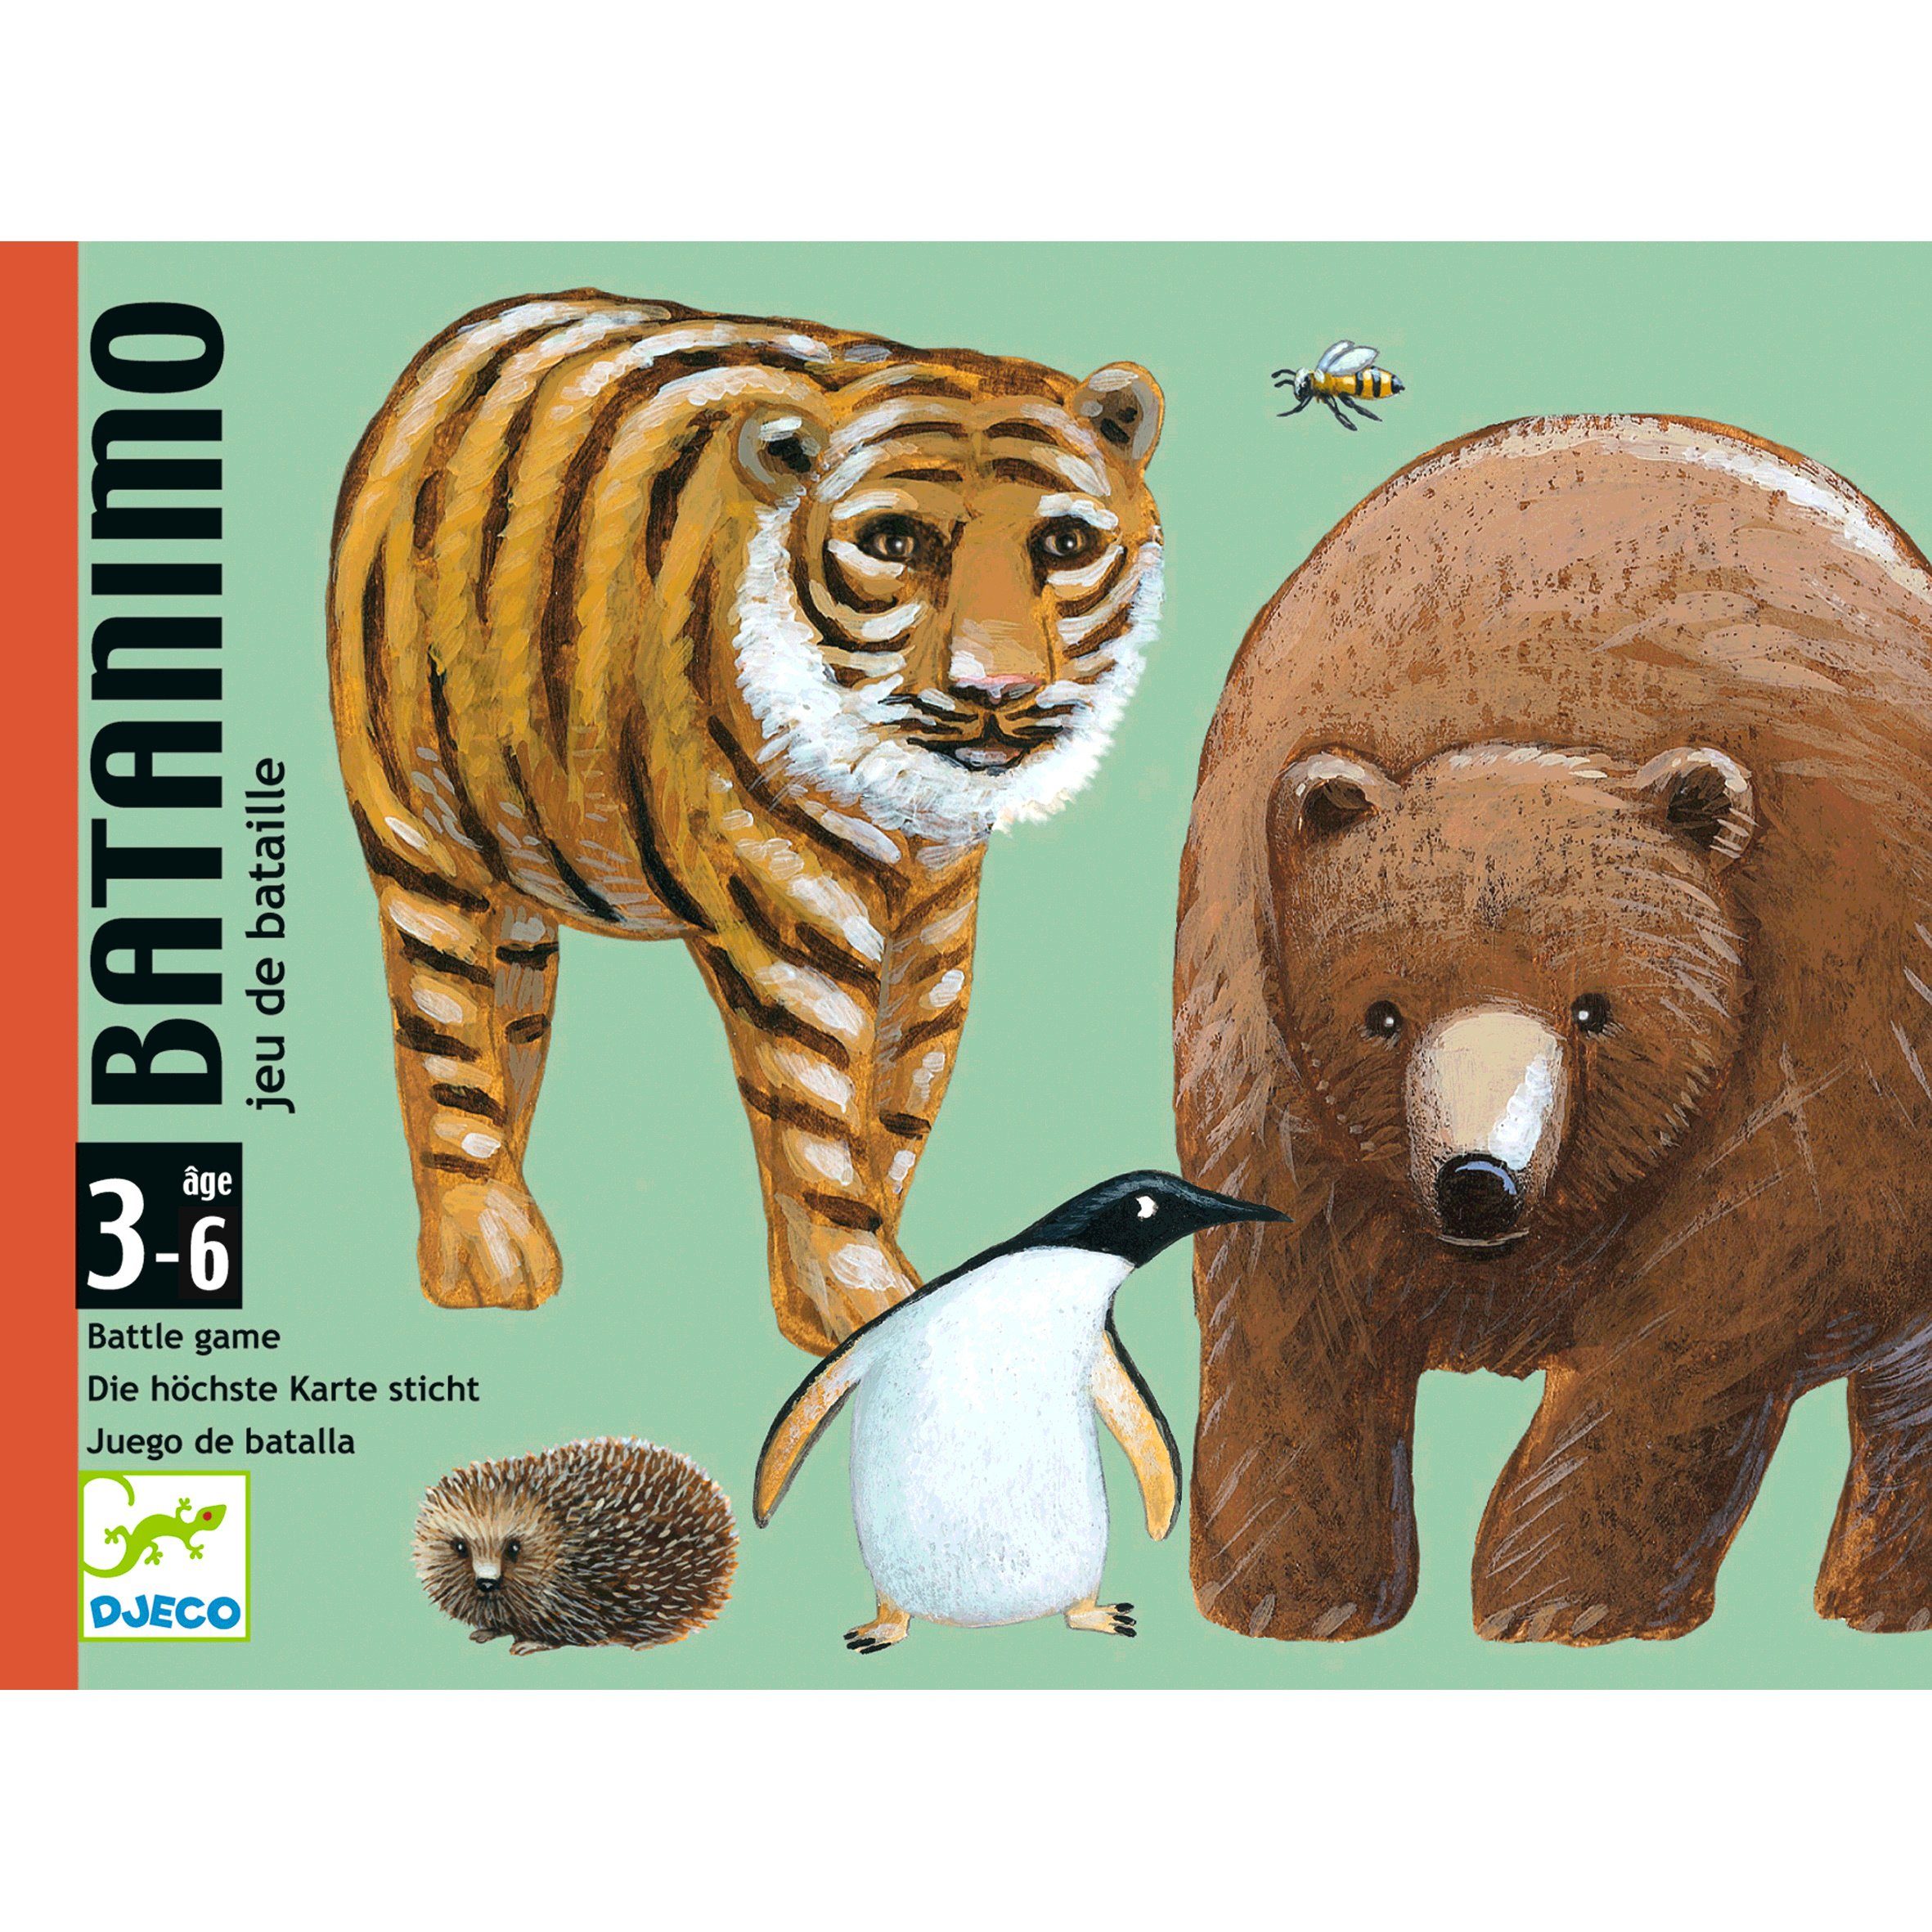 Stichspiel Spiel, verschiedenen Batanimo Kartenspiel Tier-Illustrationen mit DJECO